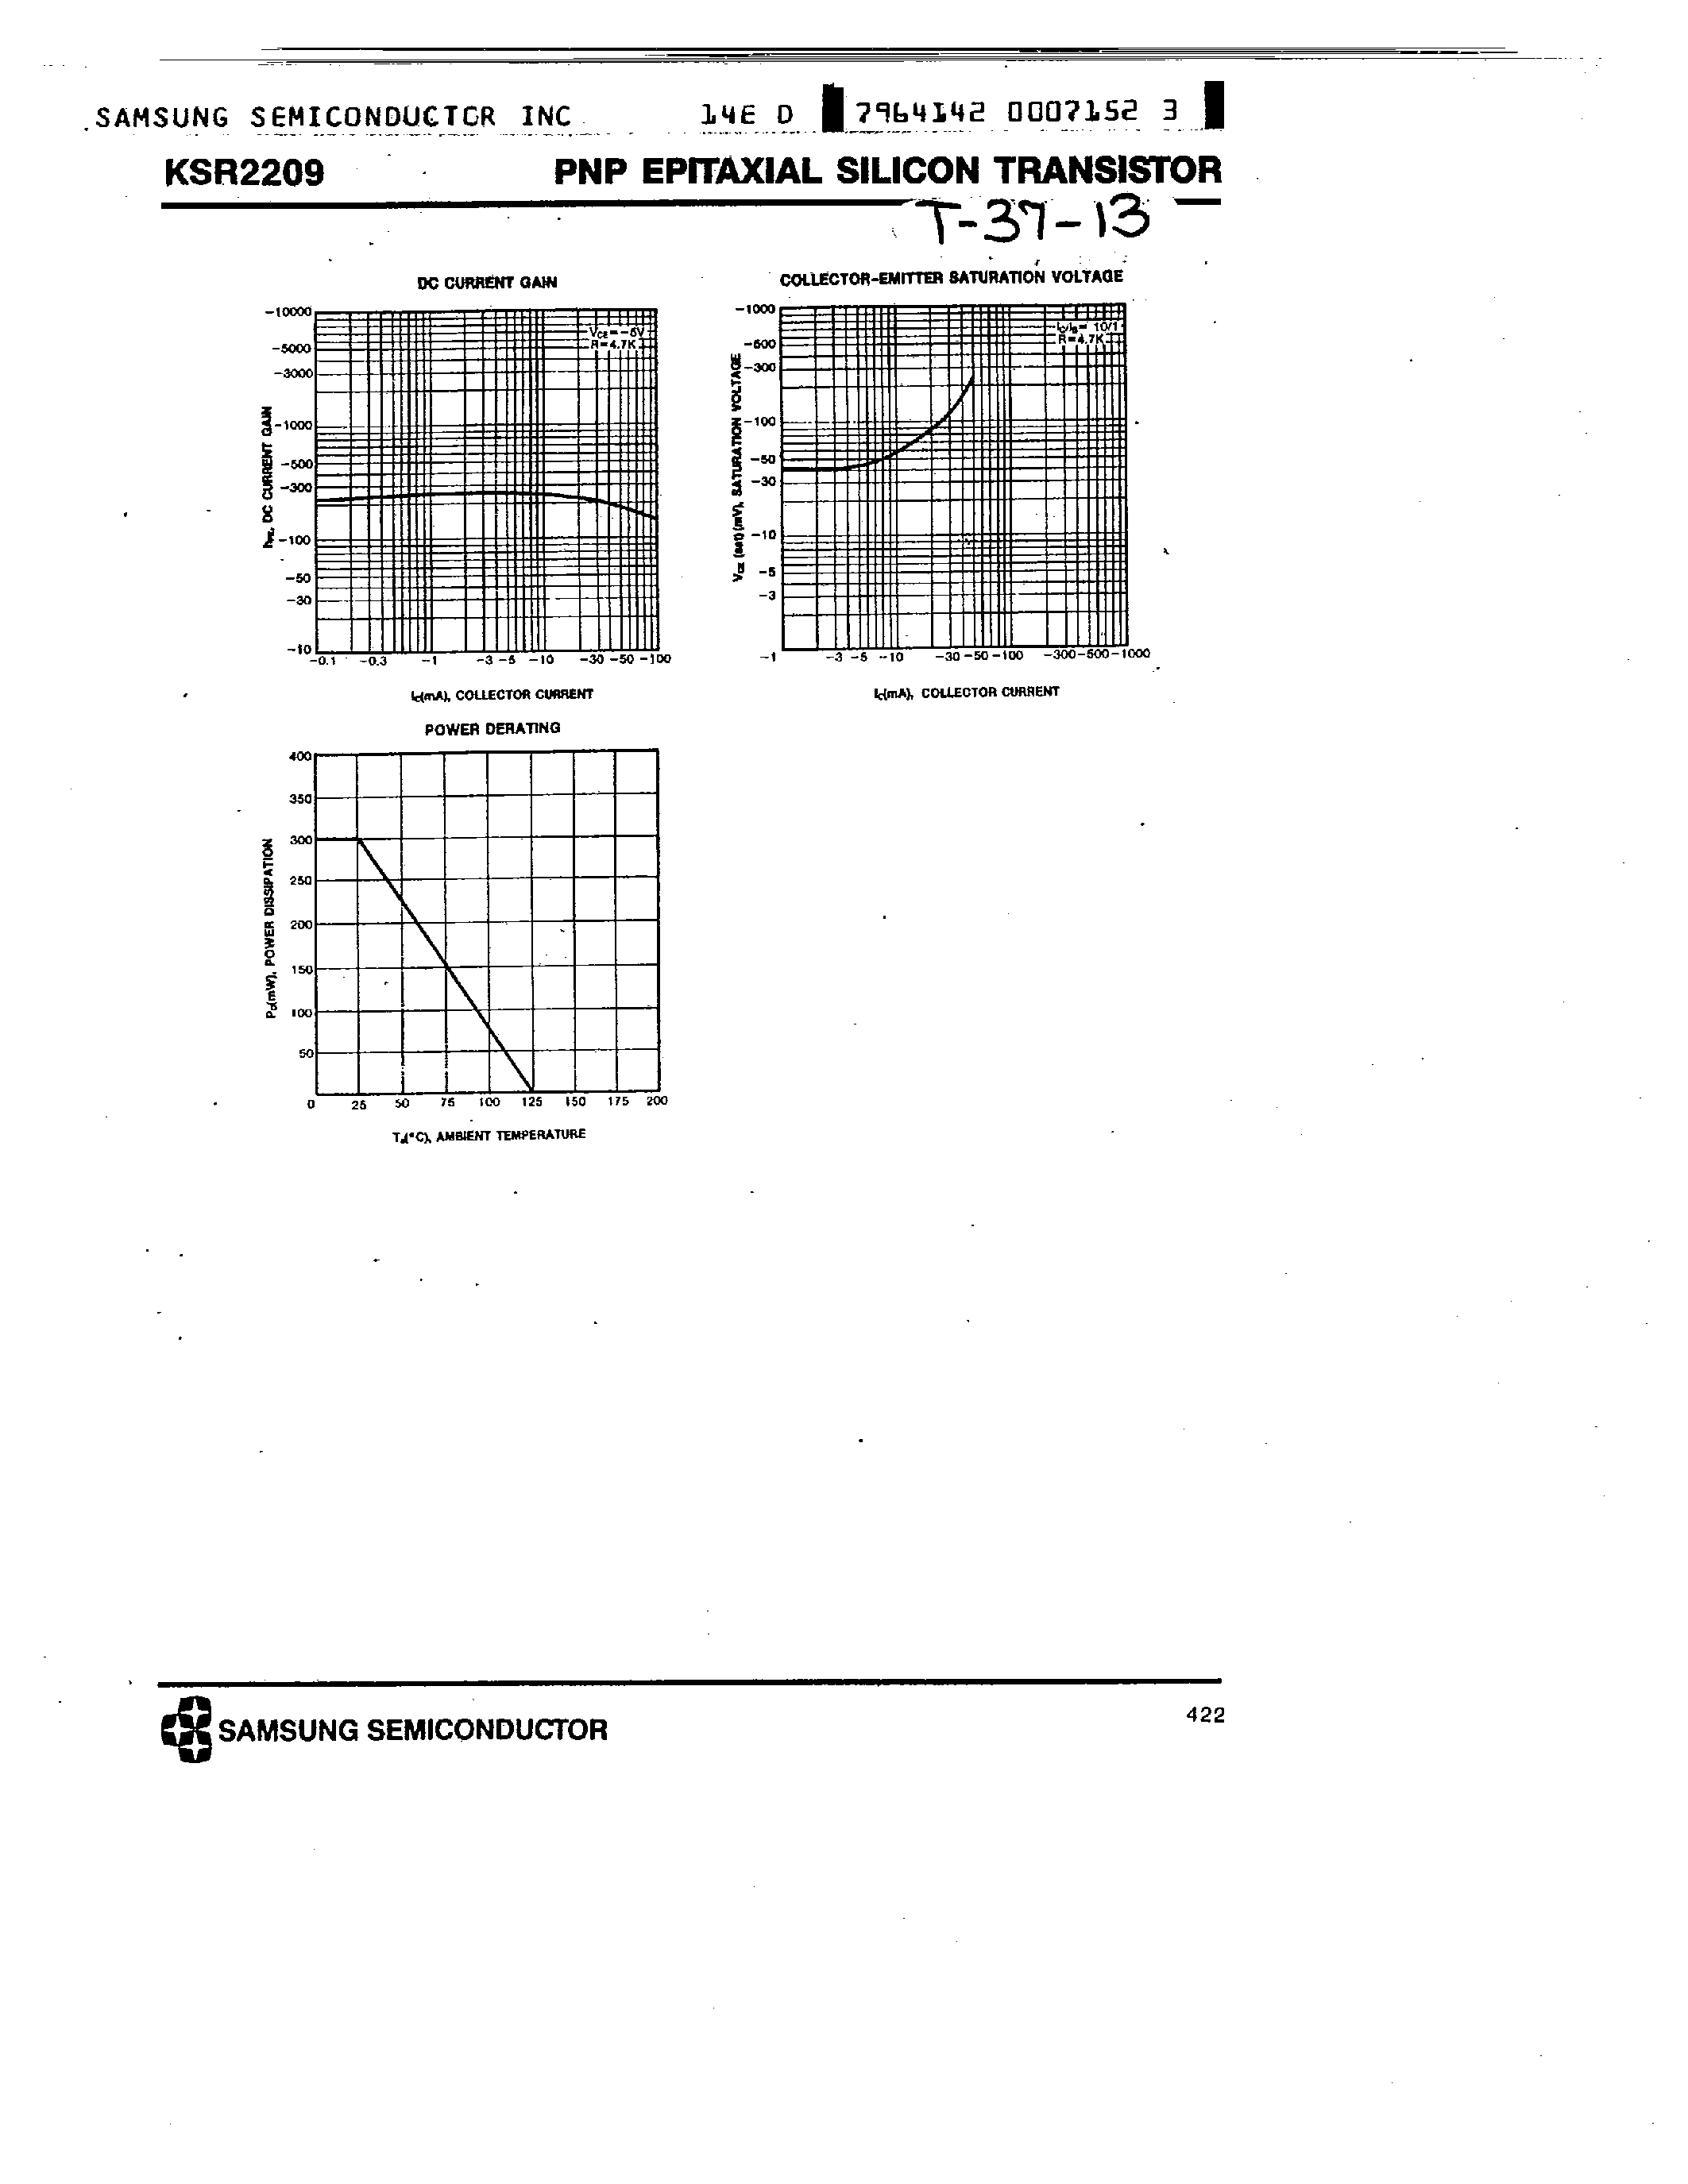 Datasheet KSR2209 - PNP (SWITCHING APPLICATION) page 2